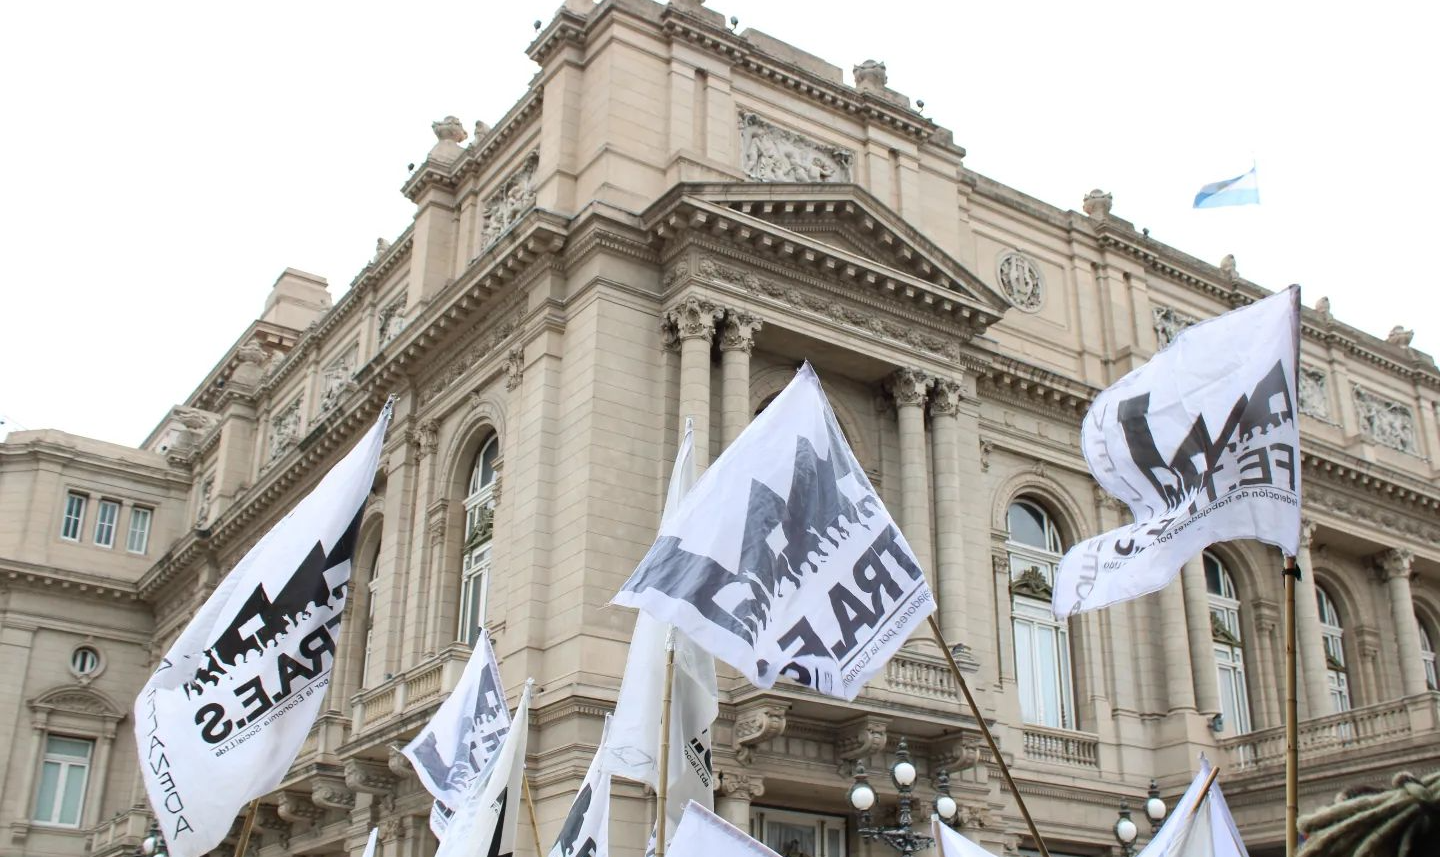 Manifestantes exigem impeachment de juízes e defendem vice-presidente Cristina Kirchner em suposto caso de lawfare